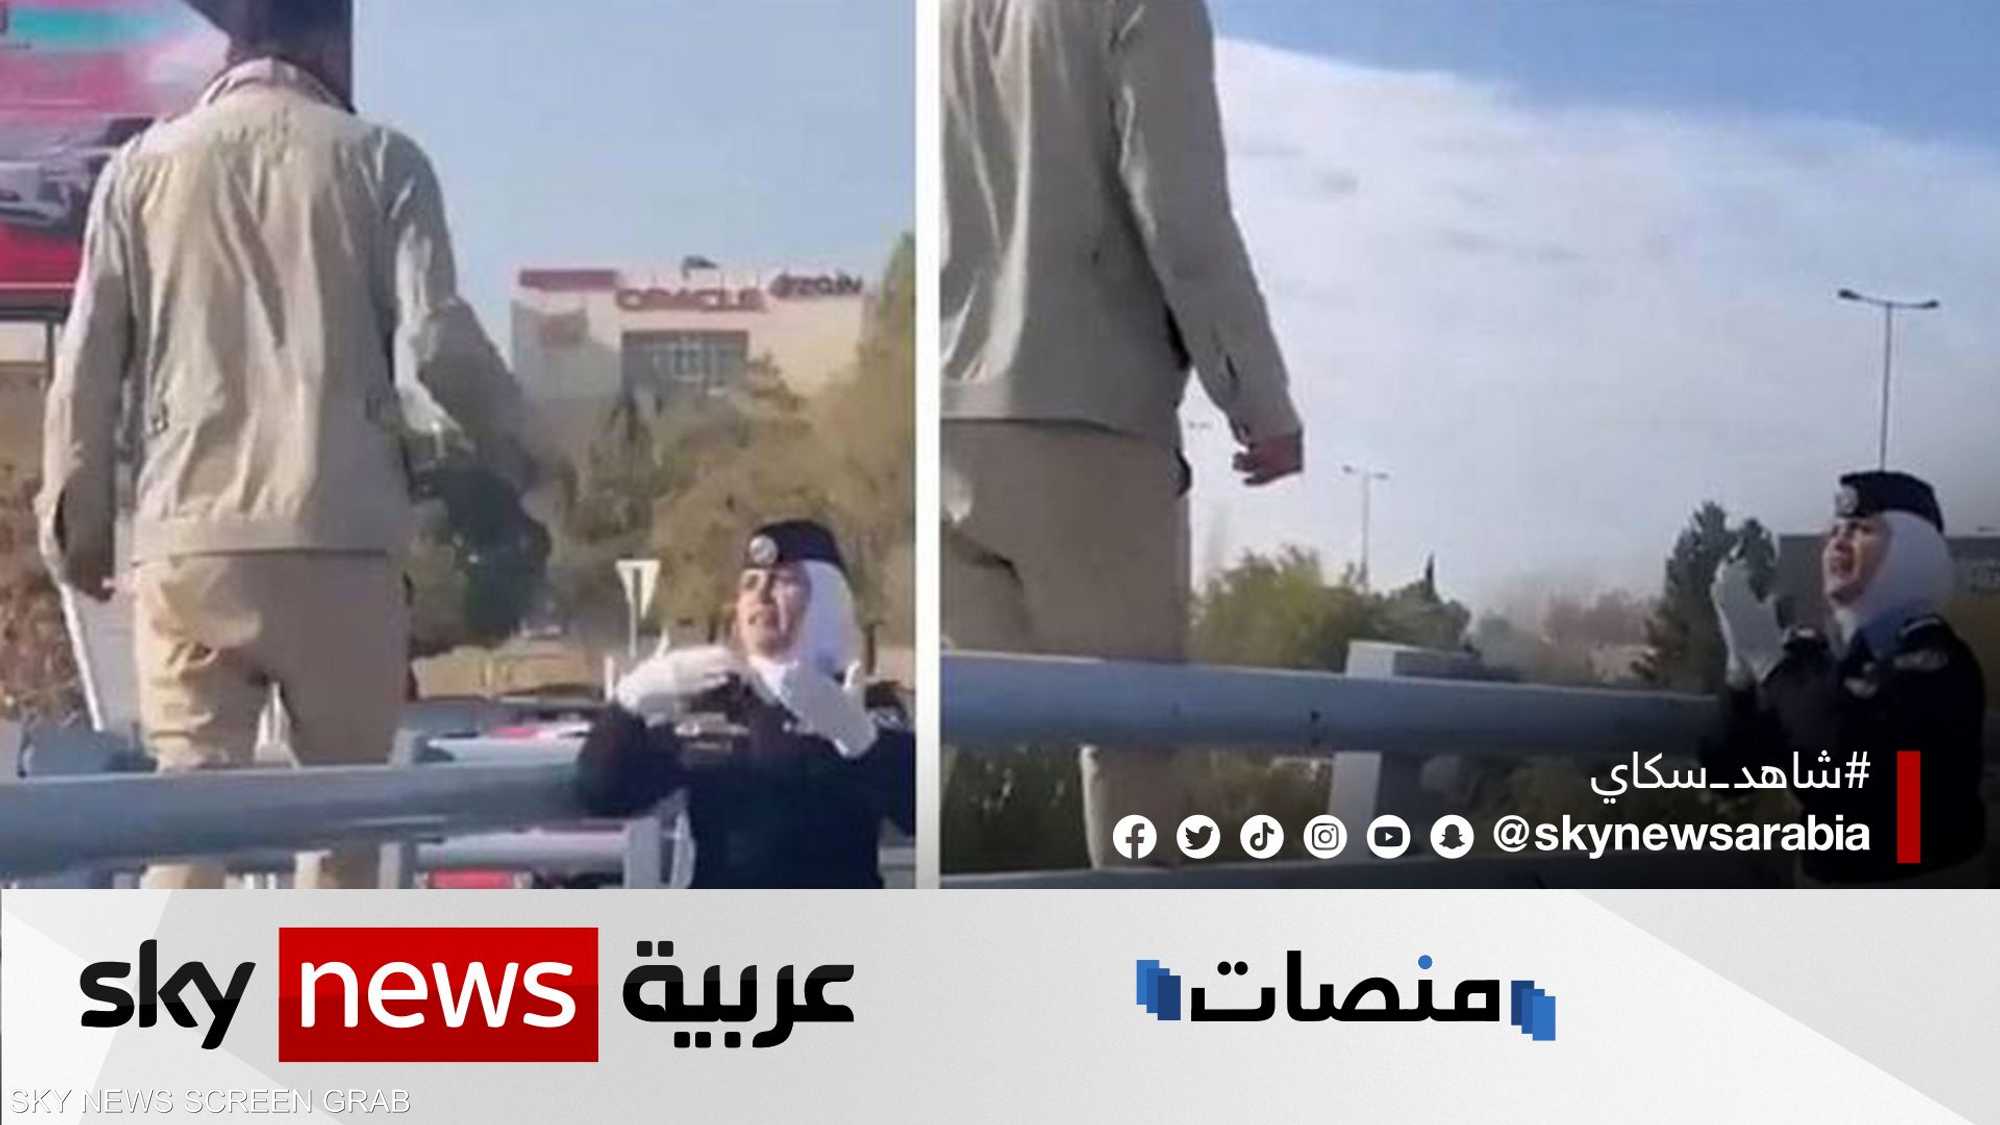 شرطية أردنية تتصدر المواقع بعد إقناع شاب على عدم الانتحار